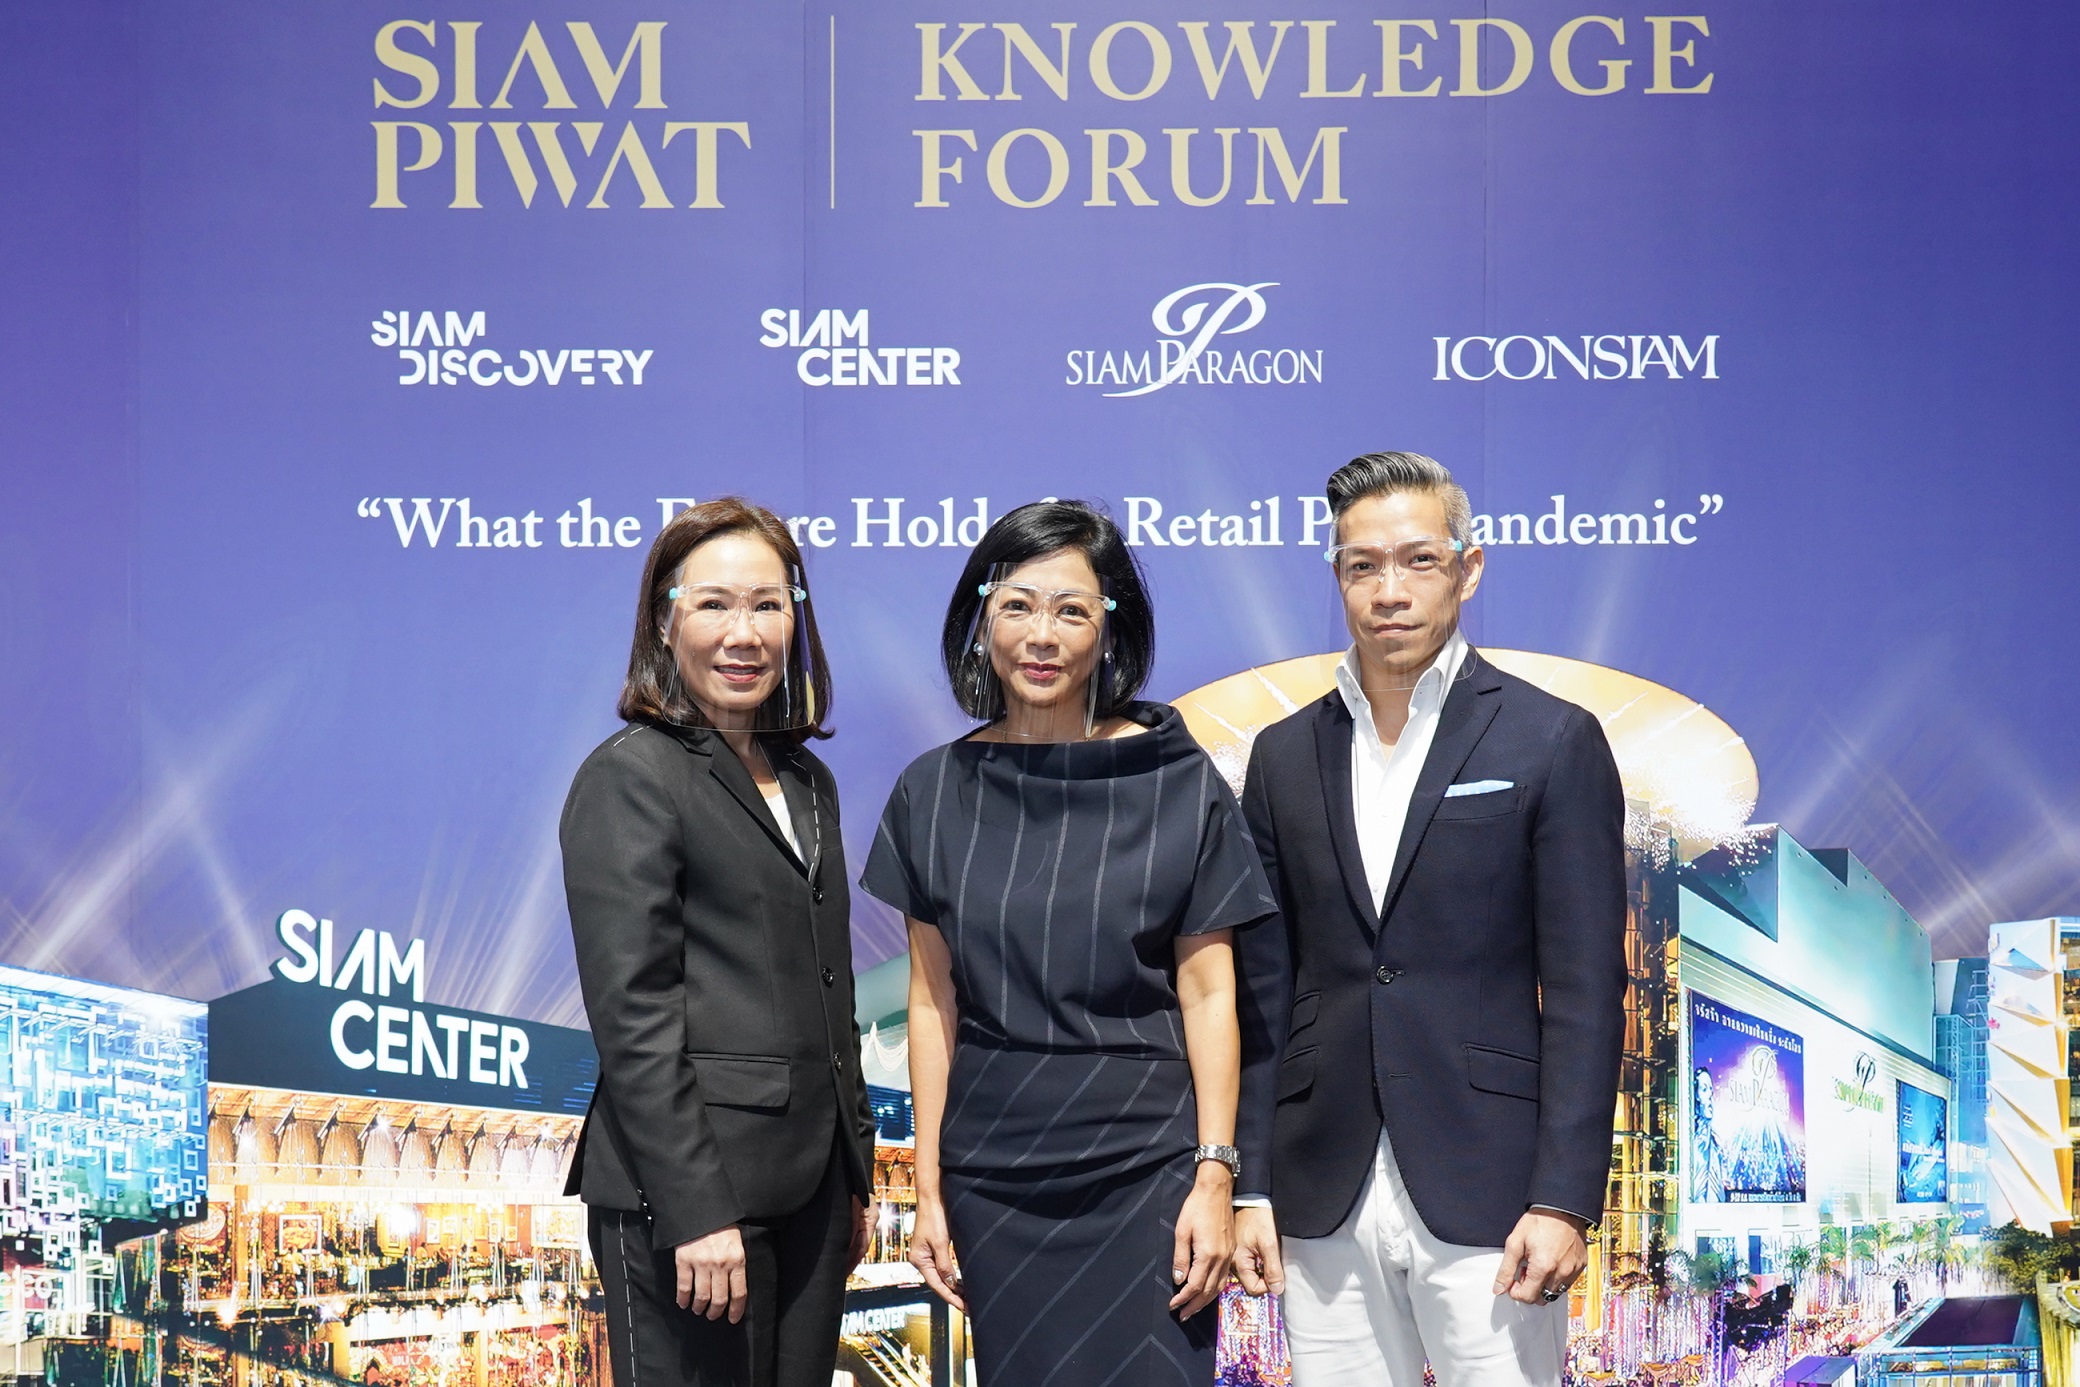 สยามพิวรรธน์ ผนึกกำลังพันธมิตรธุรกิจชั้นนำระดับประเทศ เดินหน้าเปิดประสบการณ์ดิจิทัลแห่งอนาคต จัดงาน Siam Piwat Knowledge Forum จับมือคู่ค้าขับเคลื่อนธุรกิจสู่ความสำเร็จร่วมกันในระดับโลก